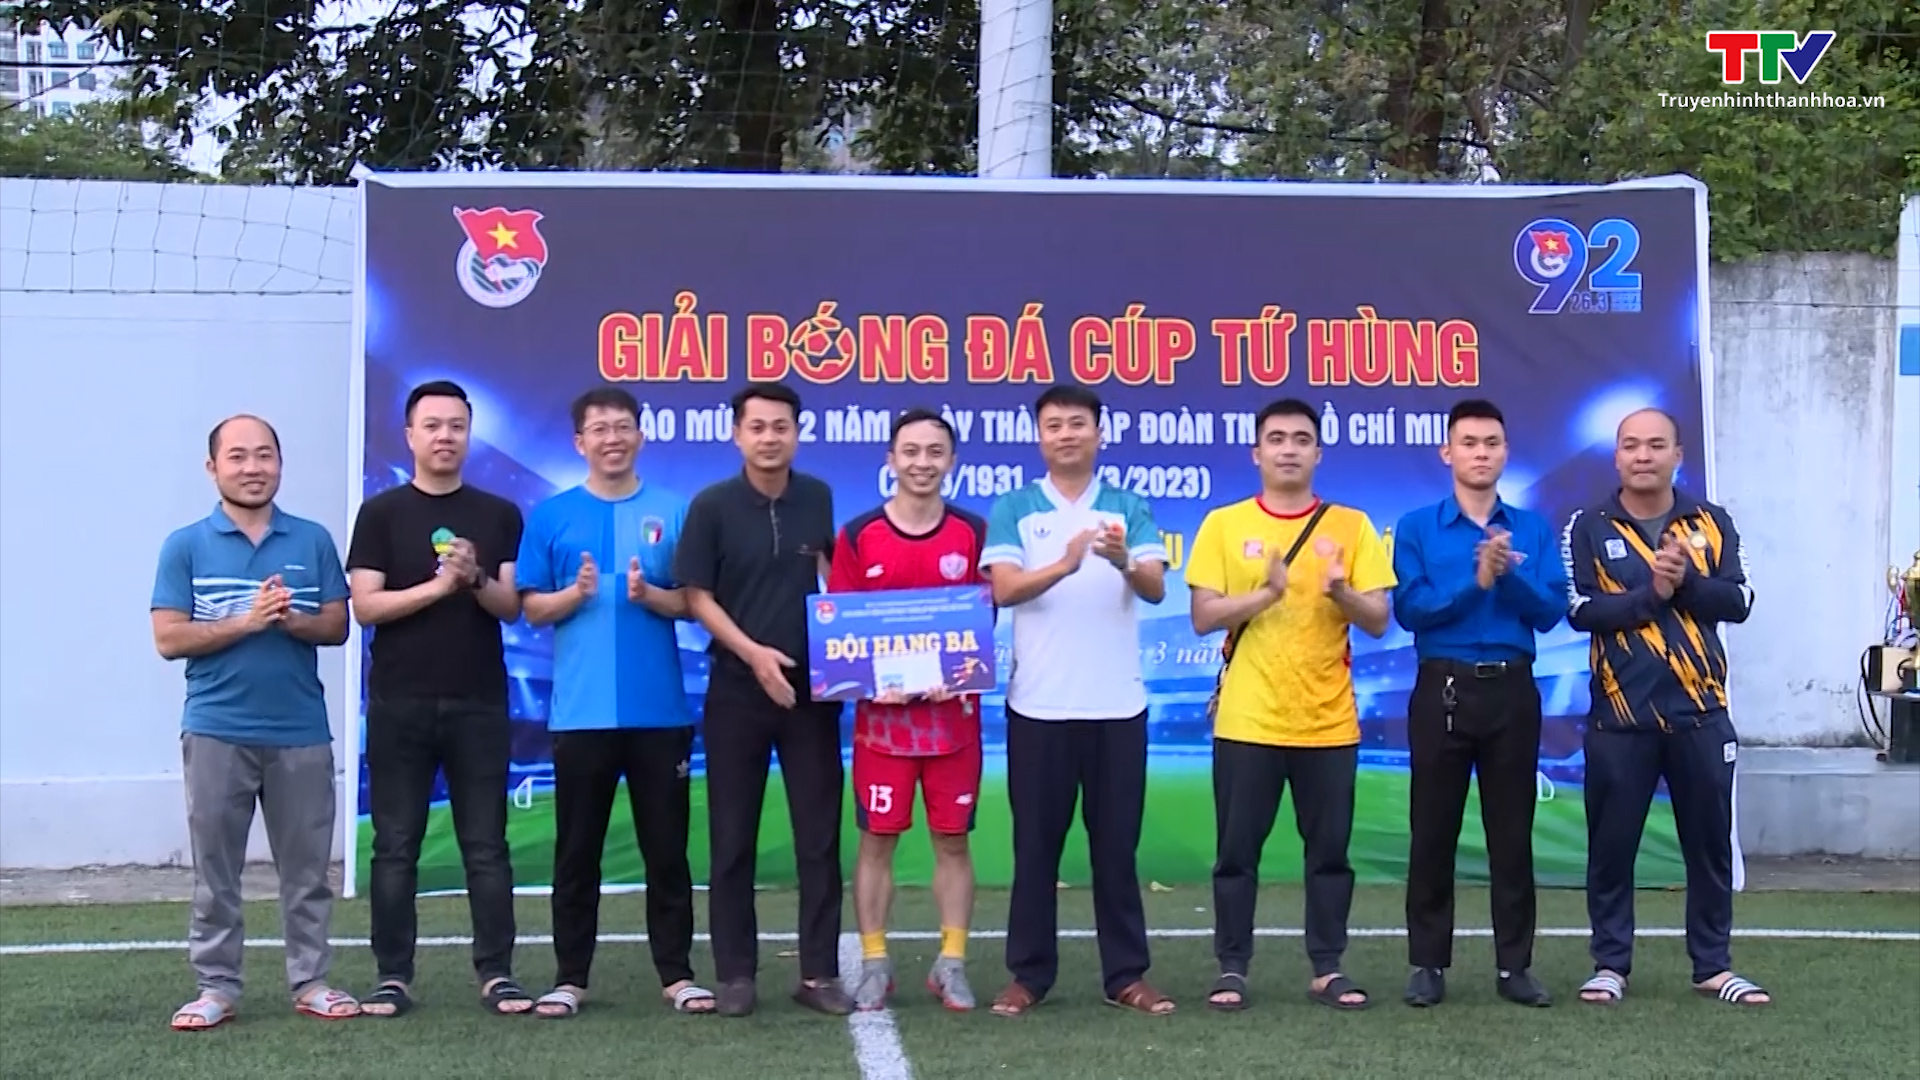 Giải bóng đá Cúp Tứ hùng chào mừng ngày thành lập Đoàn thanh niên cộng sản Hồ Chí Minh năm 2023 - Ảnh 2.